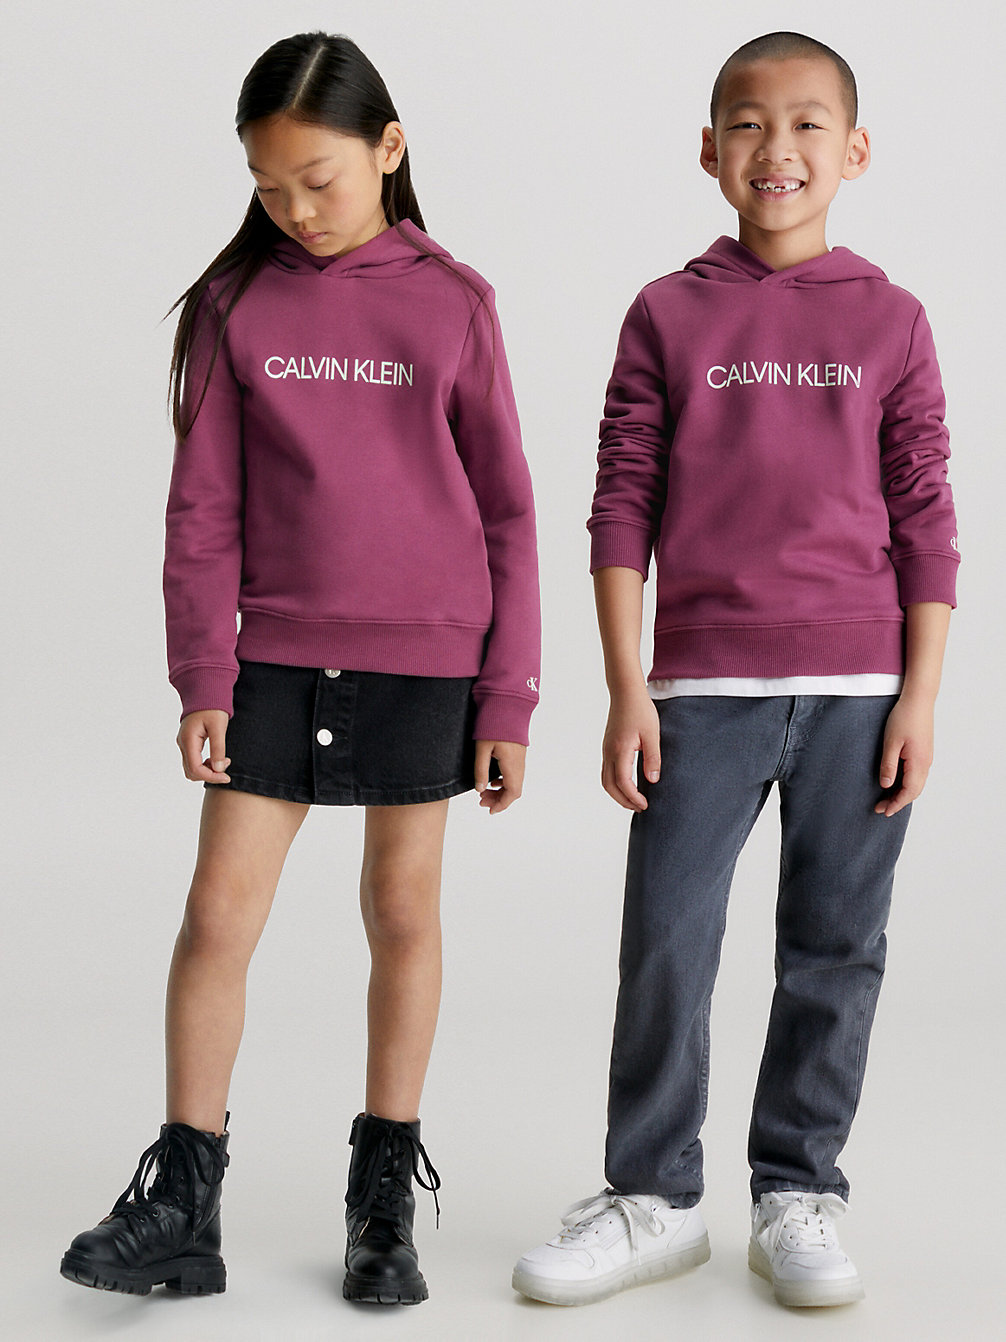 Sudadera Unisex Con Capucha Y Logo > AMARANTH > undefined kids unisex > Calvin Klein